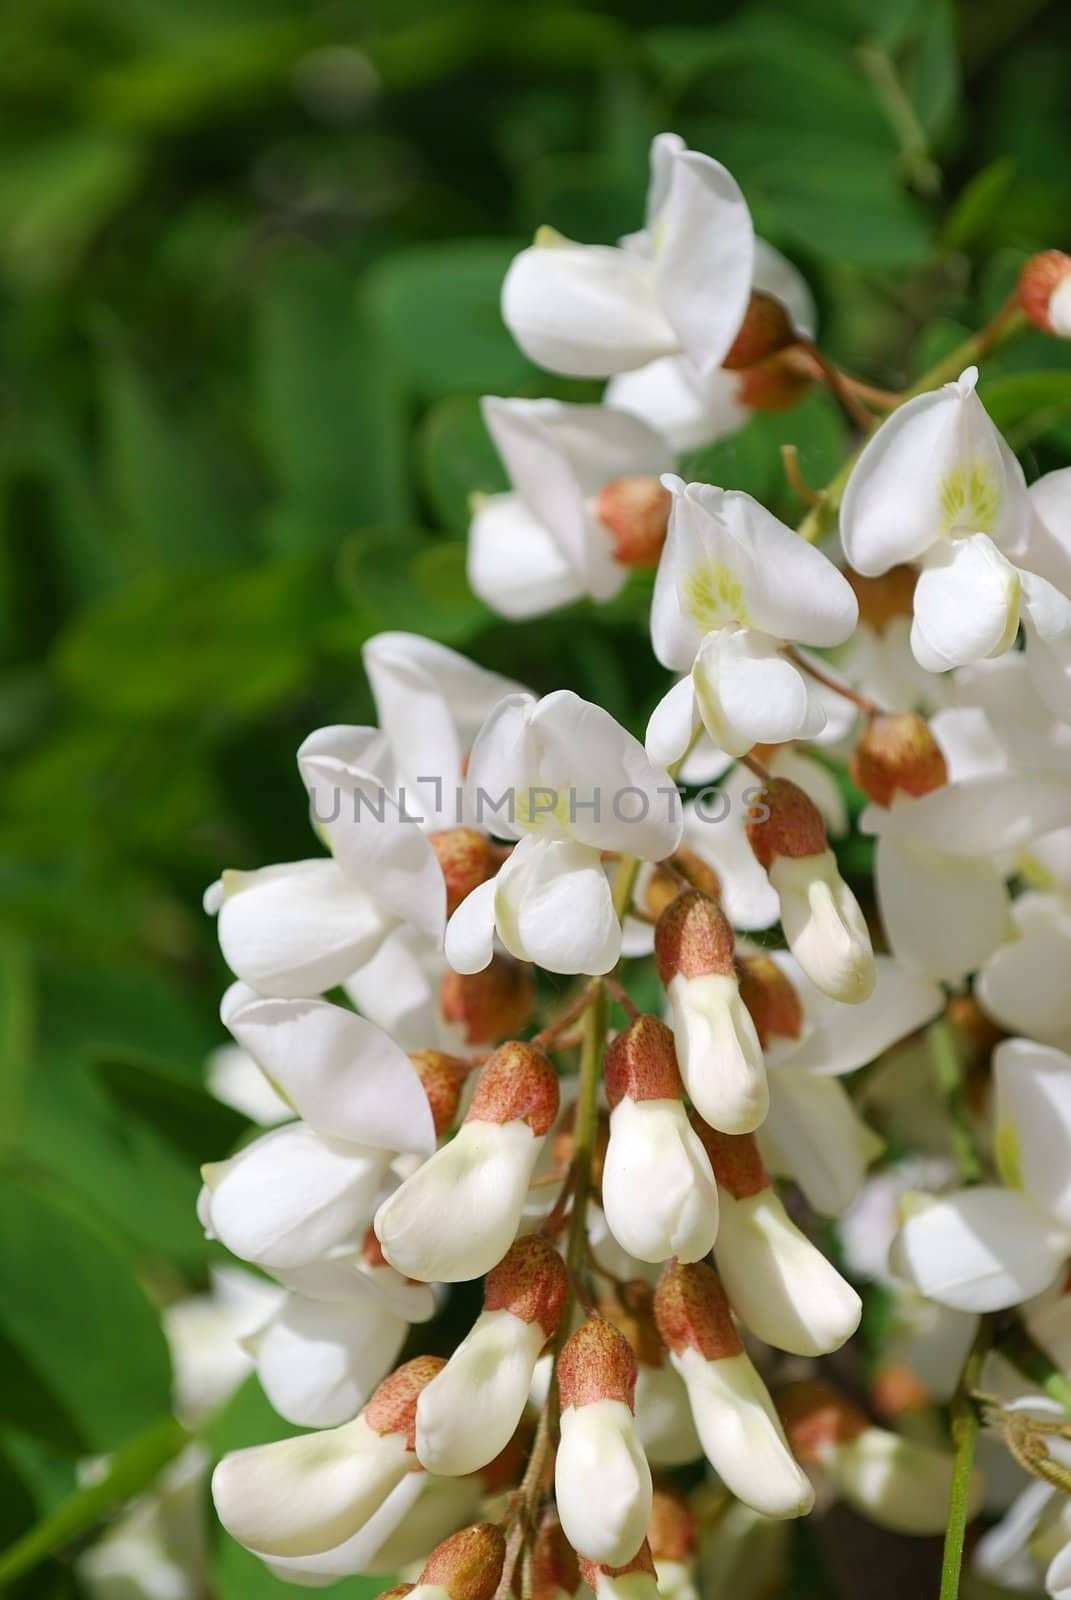 White acacia blossoms, close-up